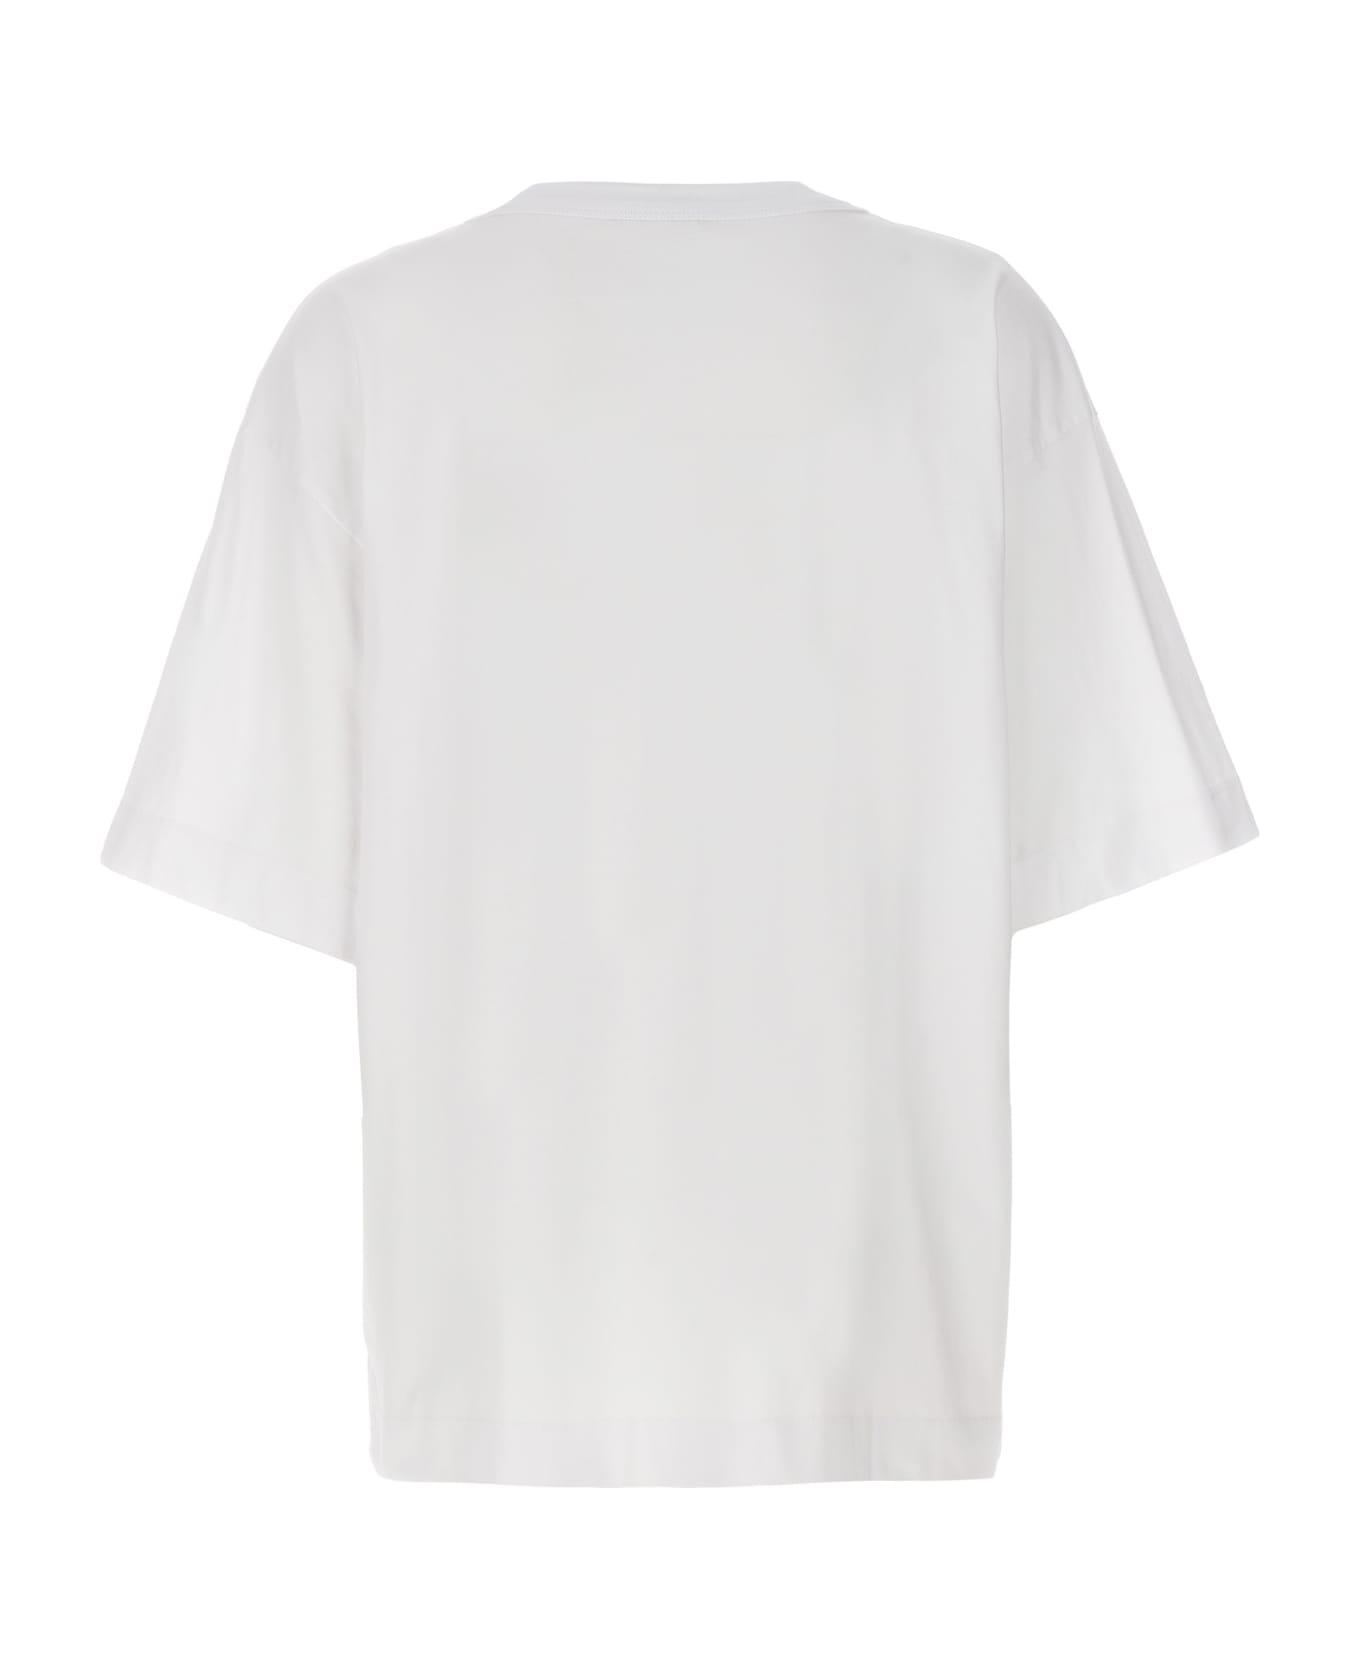 Dries Van Noten 'hegels' T-shirt - White Tシャツ